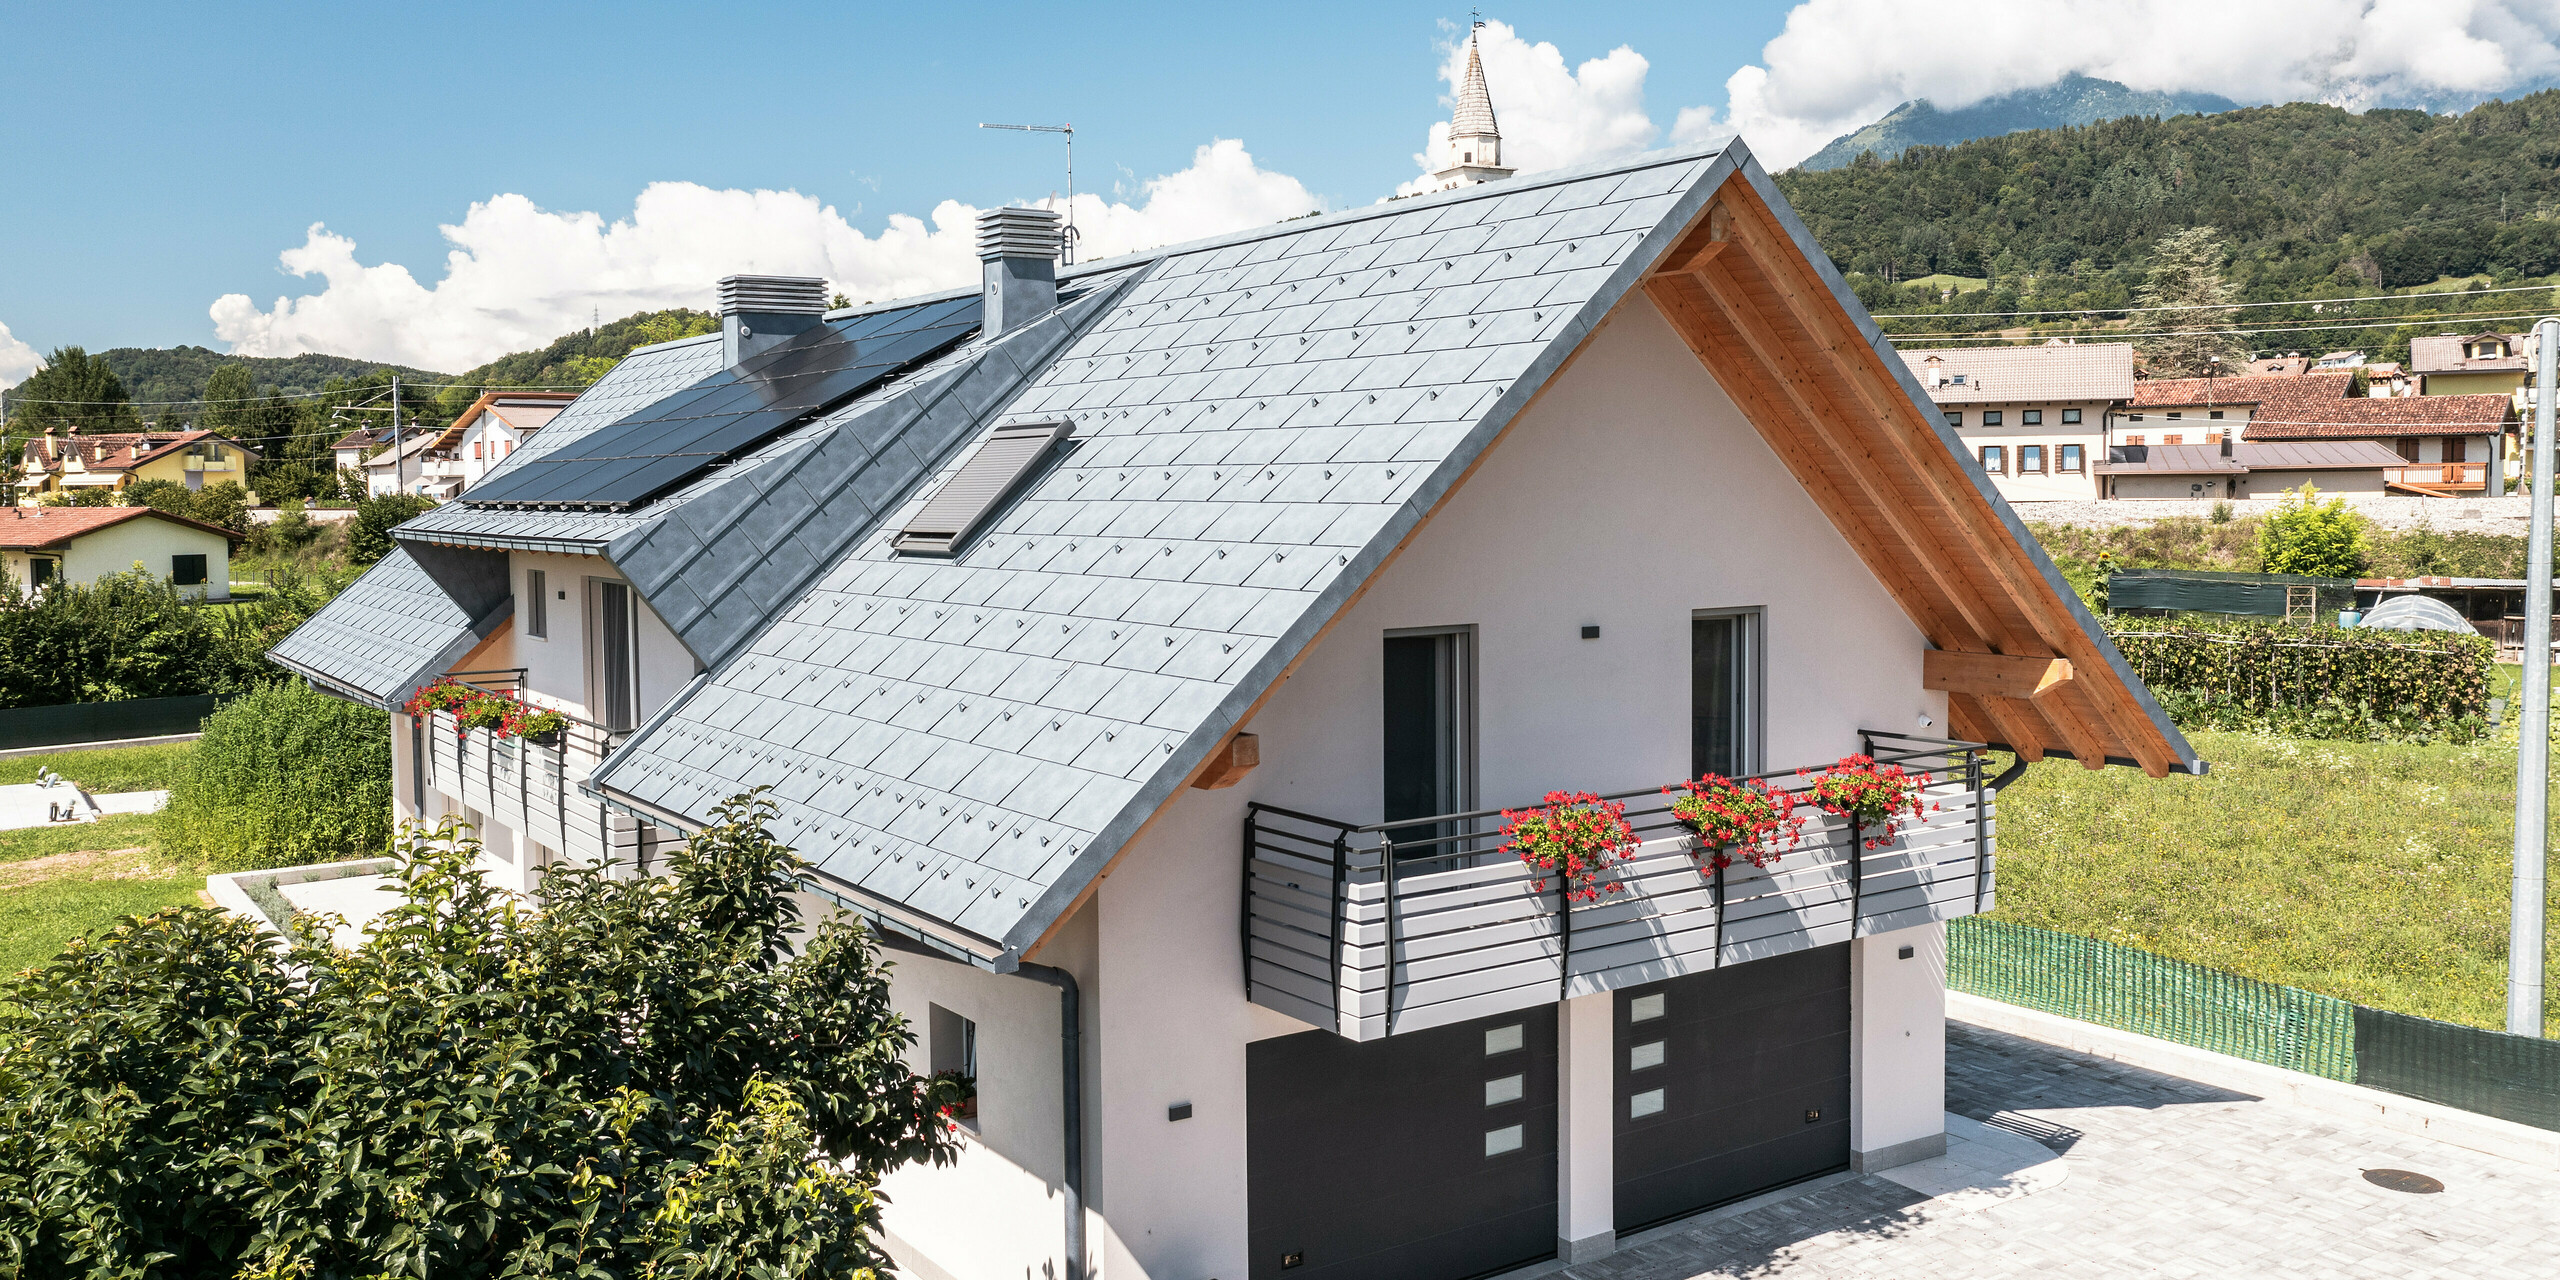 Moderní rodinný dům v italském Bellunu, charakteristický střešním systémem PREFA v antracitové barvě v podobě střešního panelu R.16, který opticky ladí s viditelnými dřevěnými trámy štítu. Pečlivě navržený venkovní prostor s kvetoucími balkónovými truhlíky a dobře udržovaným živým plotem dodává nemovitosti lákavý šmrnc, zasazený do klidné vesnice na pozadí Dolomit. Pod střechou jsou dva vjezdy do garáže. Barva garážových vrat ladí s hliníkovými prvky a dodává nemovitosti celkový harmonický dojem.